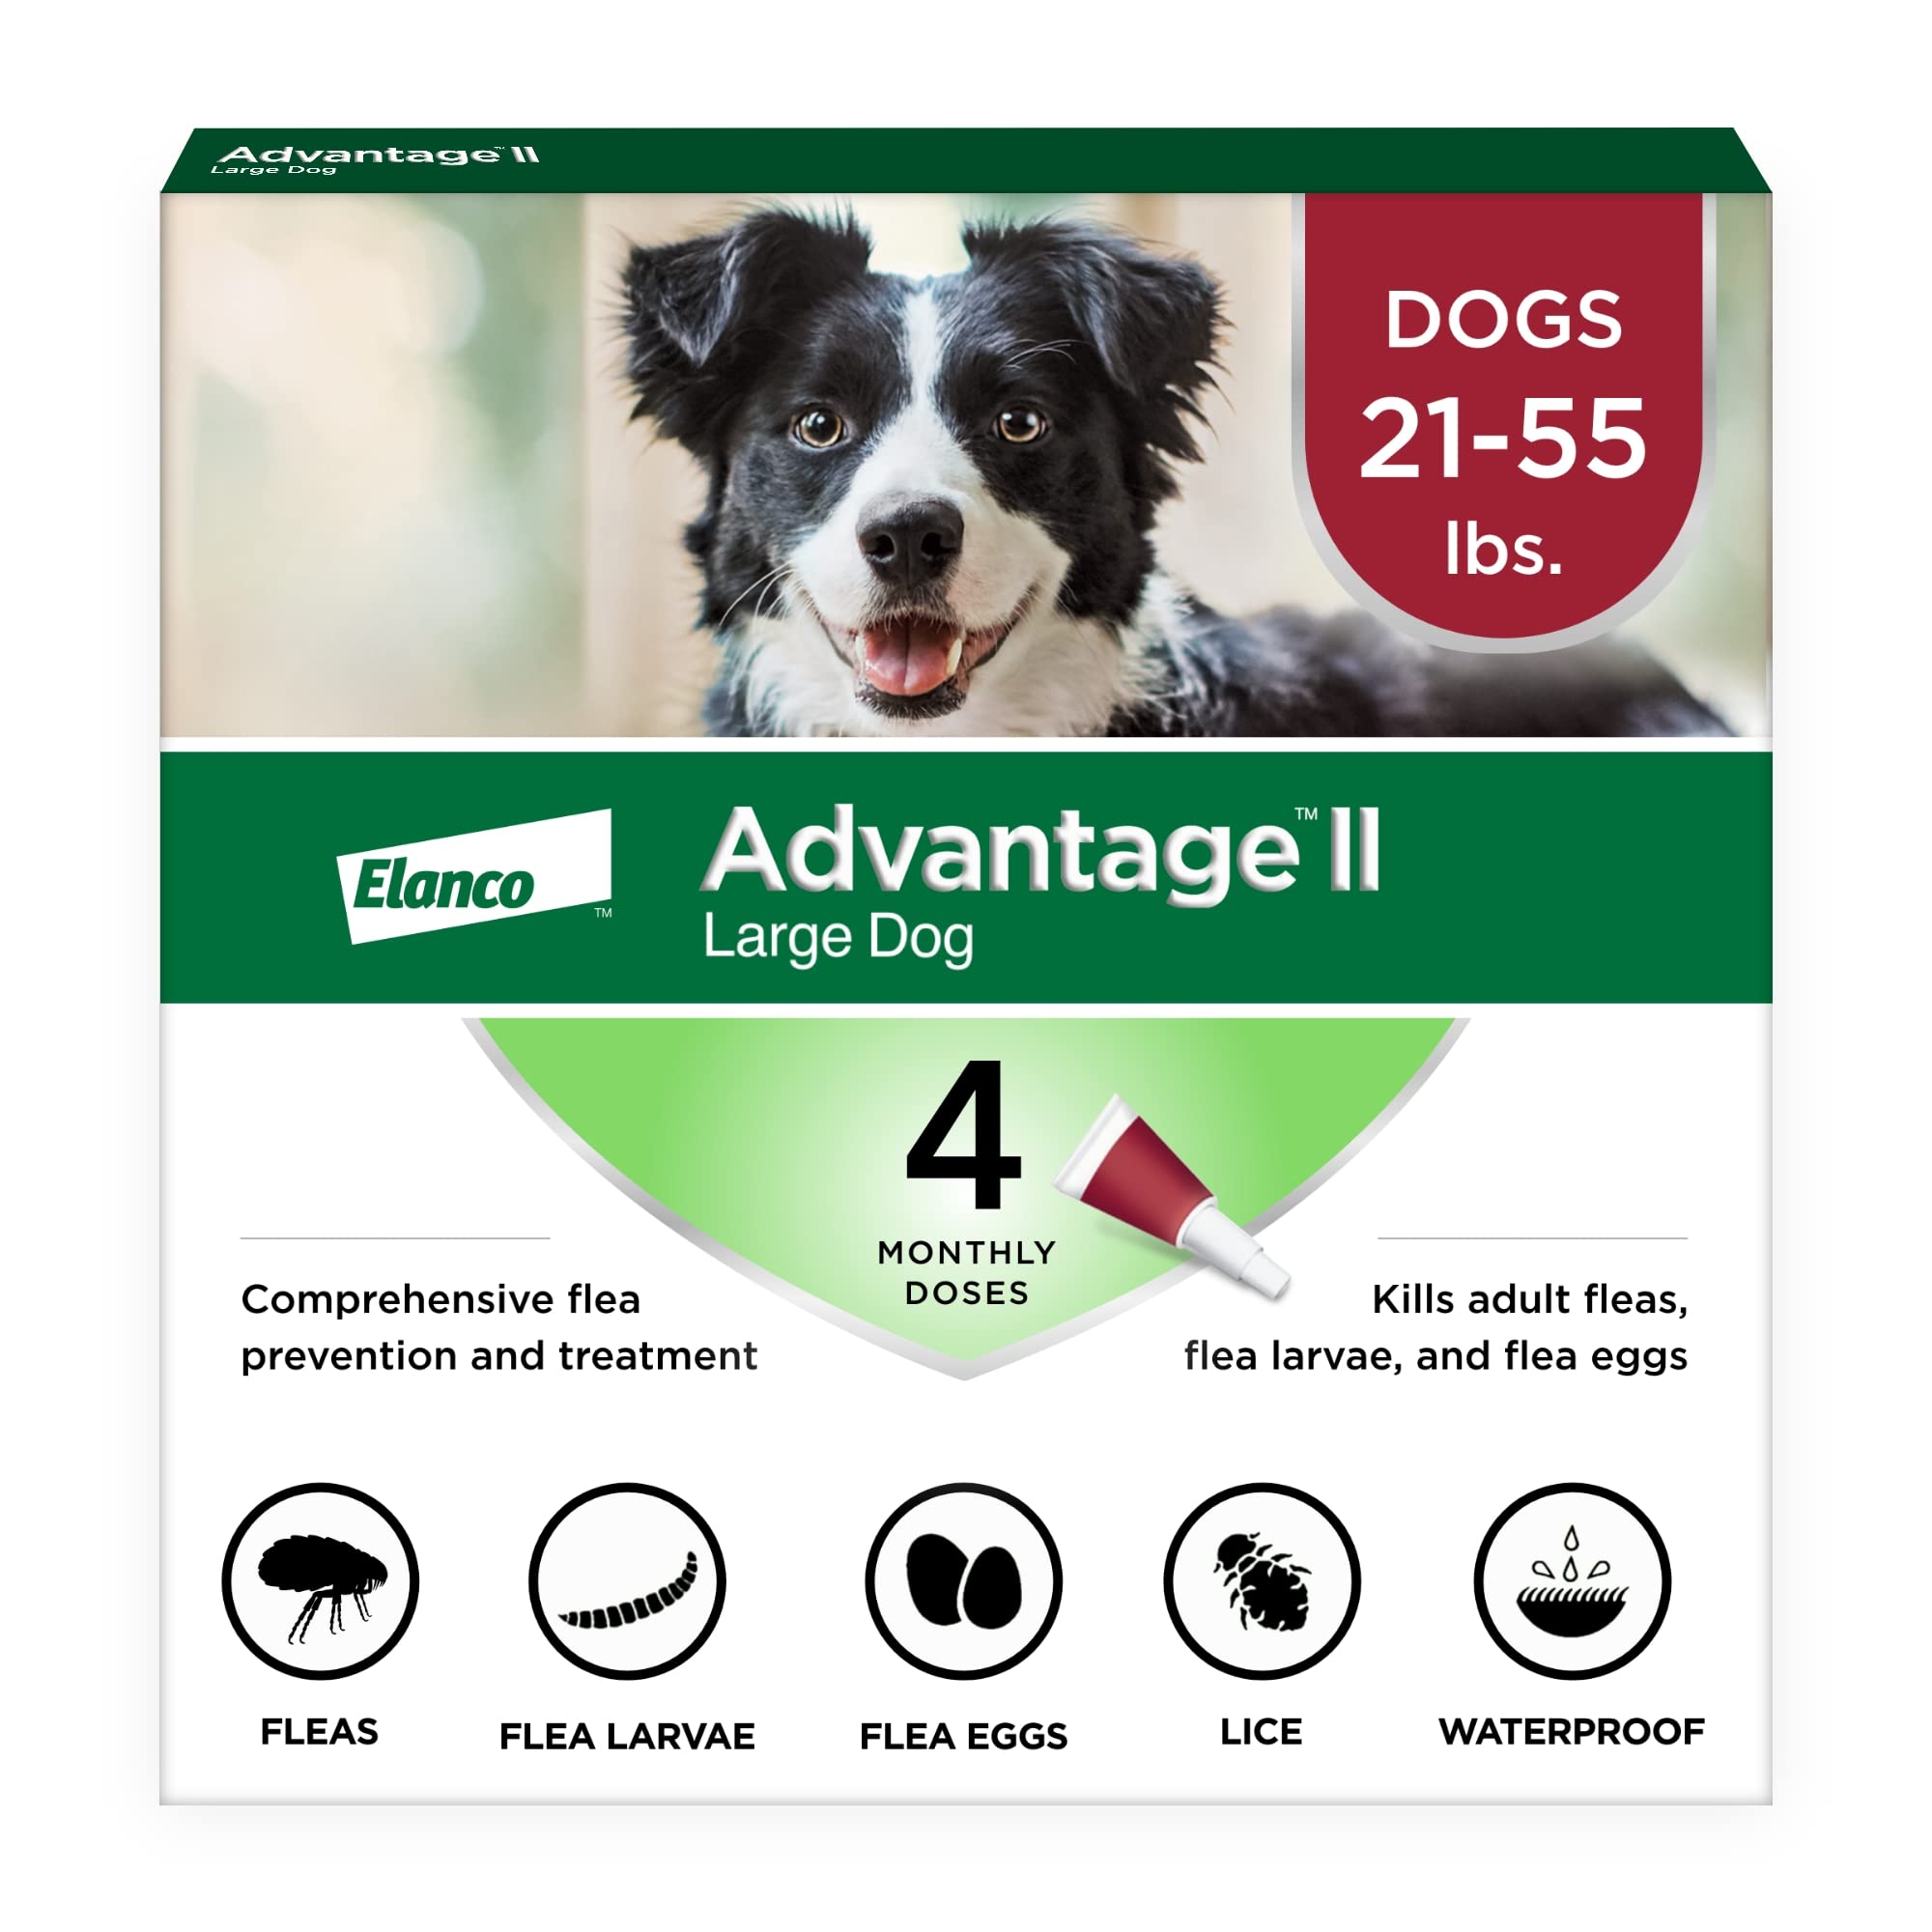 Advantage II Zapobieganie i leczenie pcheł dla dużych psów (21-55 funtów)